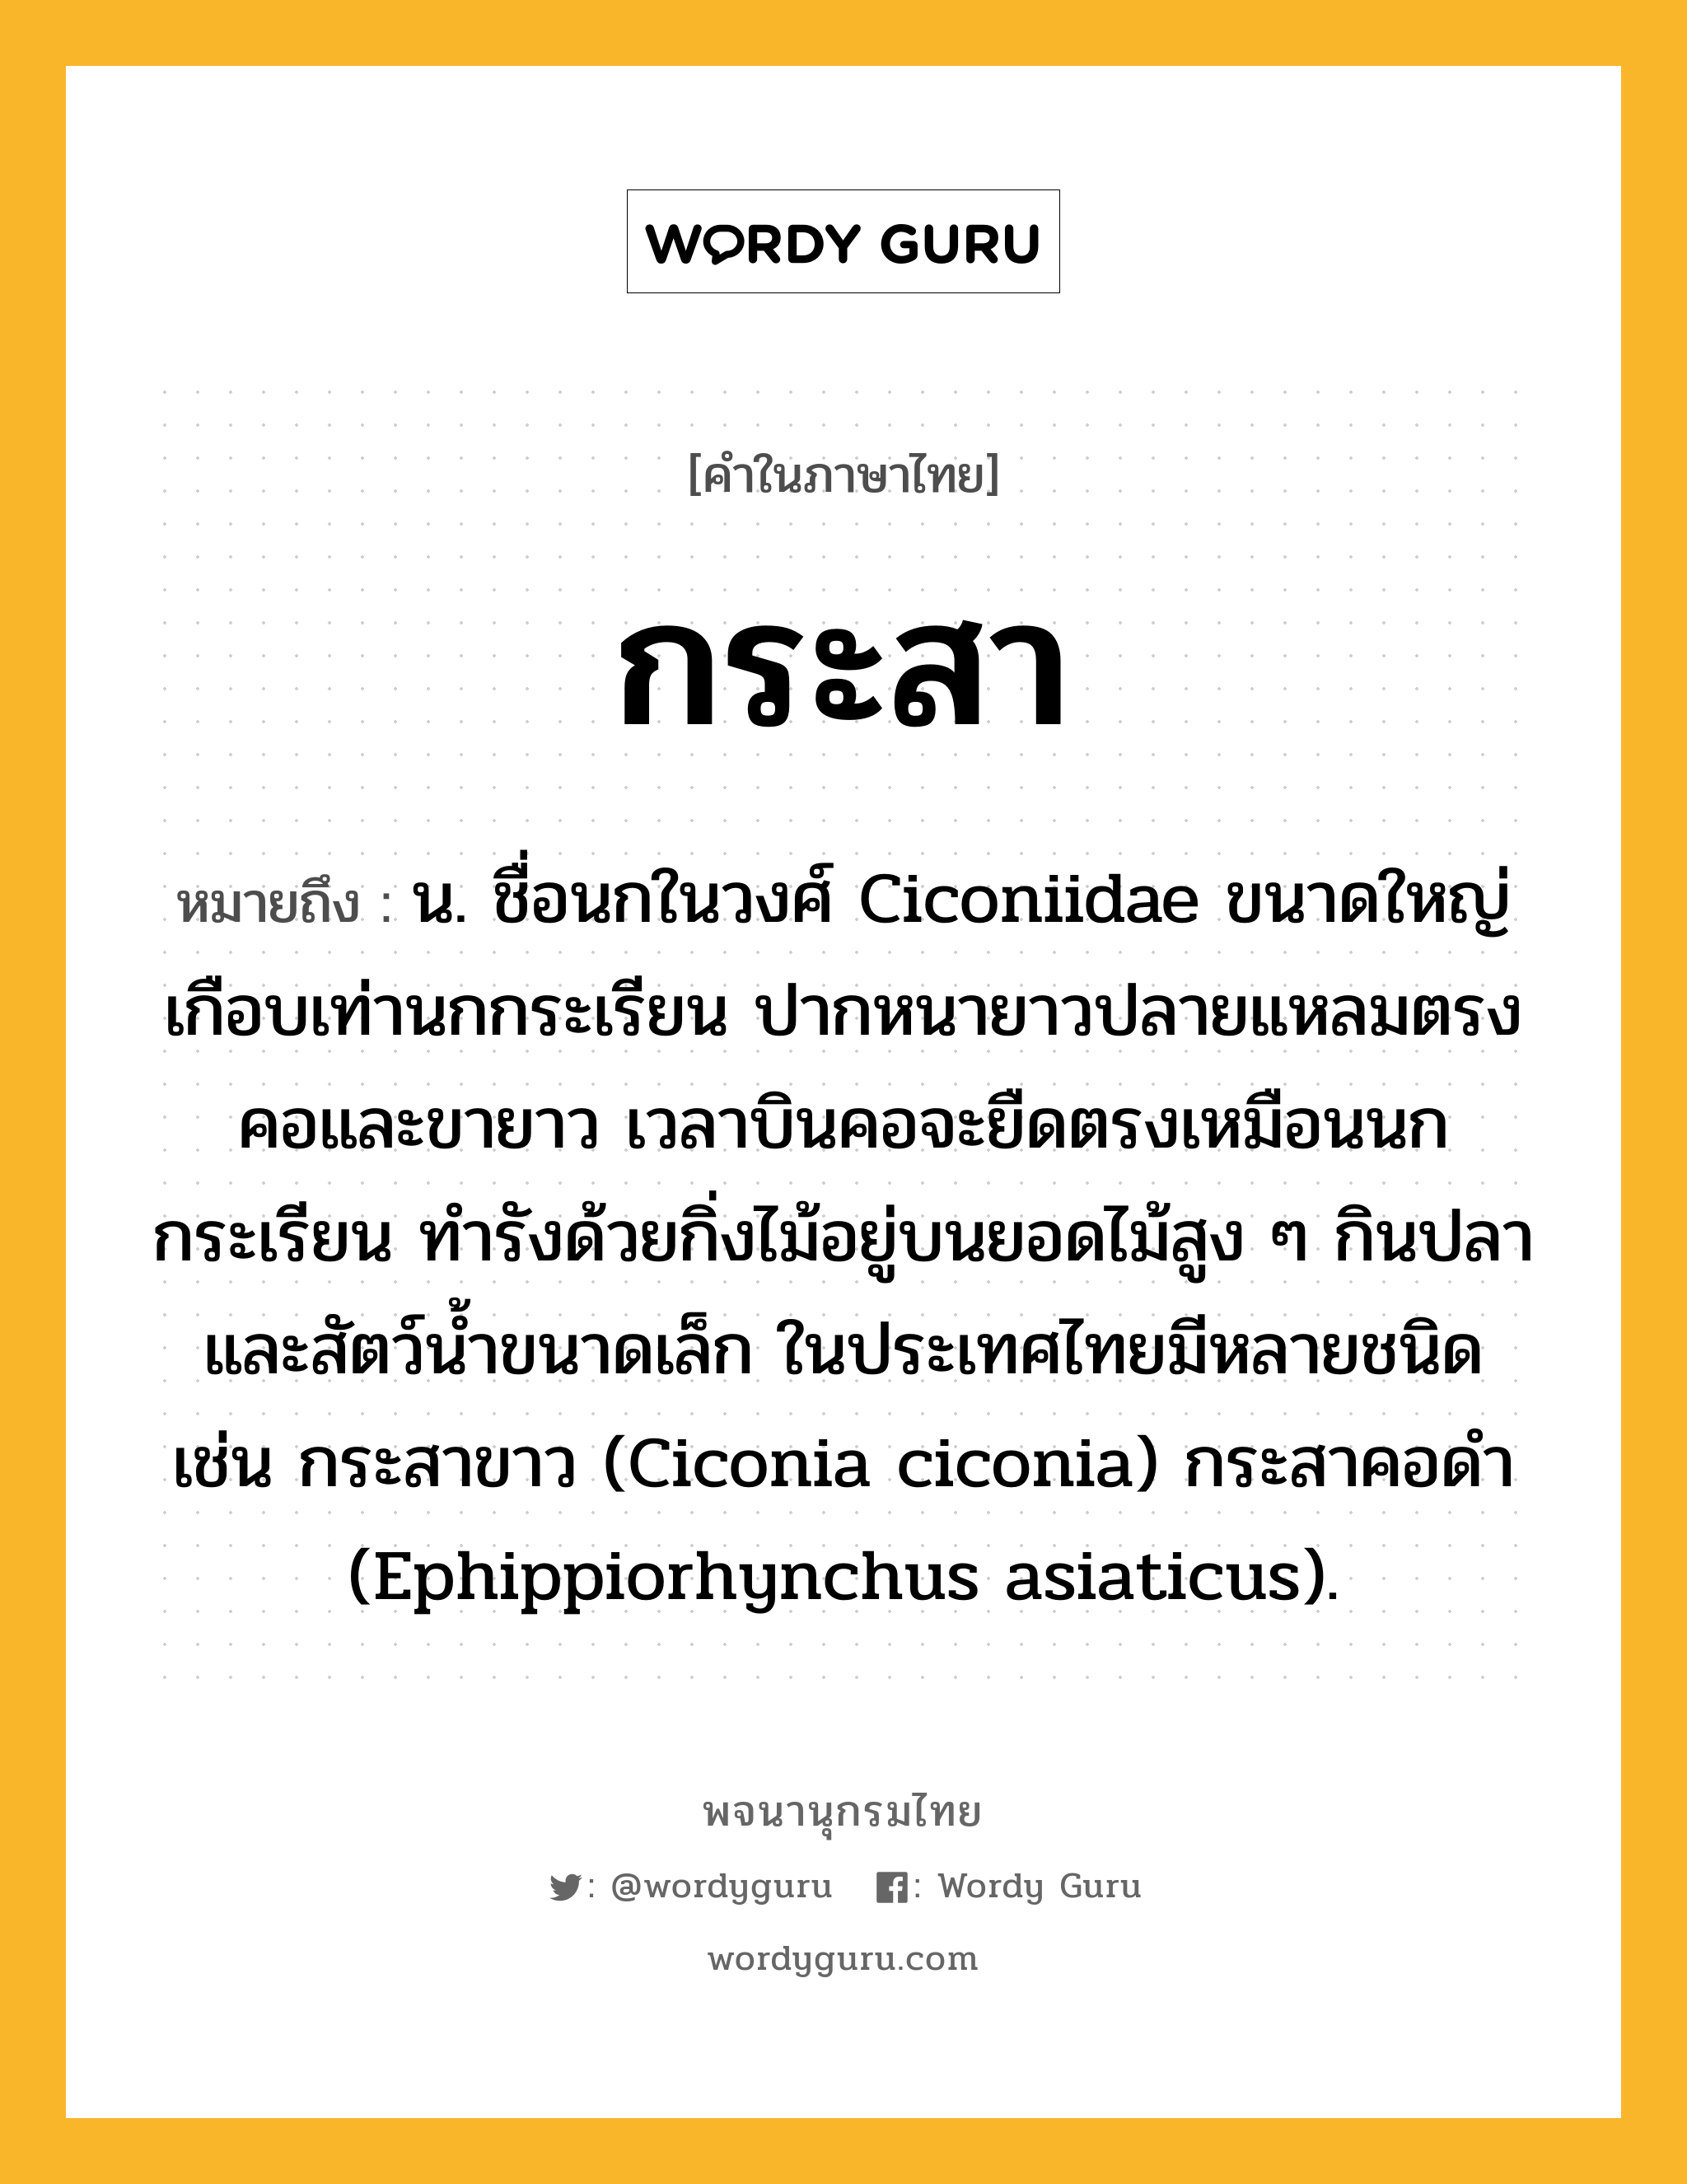 กระสา ความหมาย หมายถึงอะไร?, คำในภาษาไทย กระสา หมายถึง น. ชื่อนกในวงศ์ Ciconiidae ขนาดใหญ่เกือบเท่านกกระเรียน ปากหนายาวปลายแหลมตรง คอและขายาว เวลาบินคอจะยืดตรงเหมือนนกกระเรียน ทํารังด้วยกิ่งไม้อยู่บนยอดไม้สูง ๆ กินปลาและสัตว์นํ้าขนาดเล็ก ในประเทศไทยมีหลายชนิด เช่น กระสาขาว (Ciconia ciconia) กระสาคอดํา (Ephippiorhynchus asiaticus).